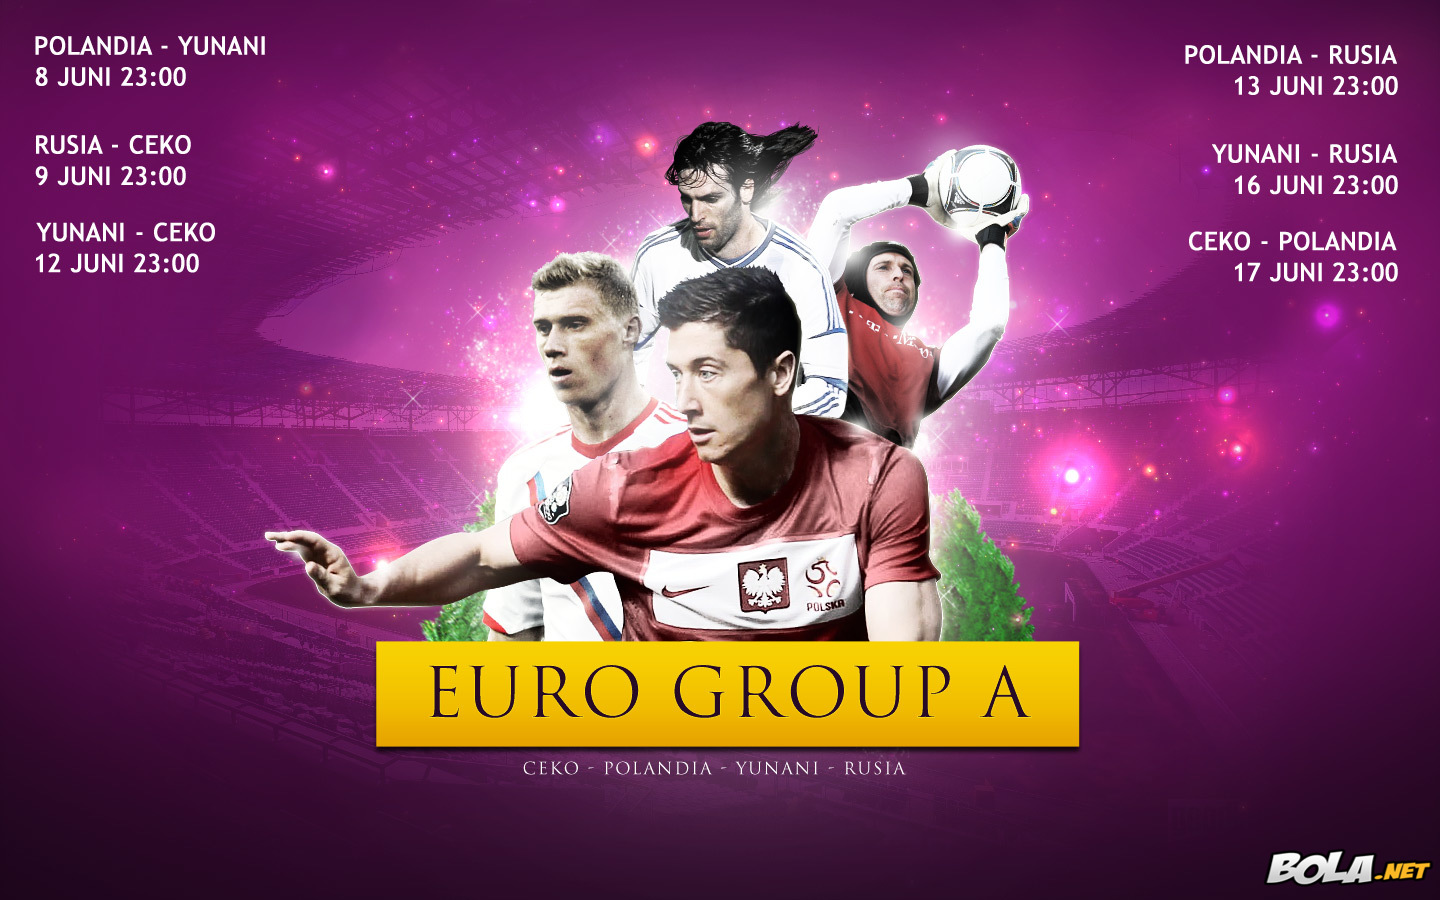 Deskripsi : Wallpaper Jadwal Grup A Euro 2012, size: 1440x900